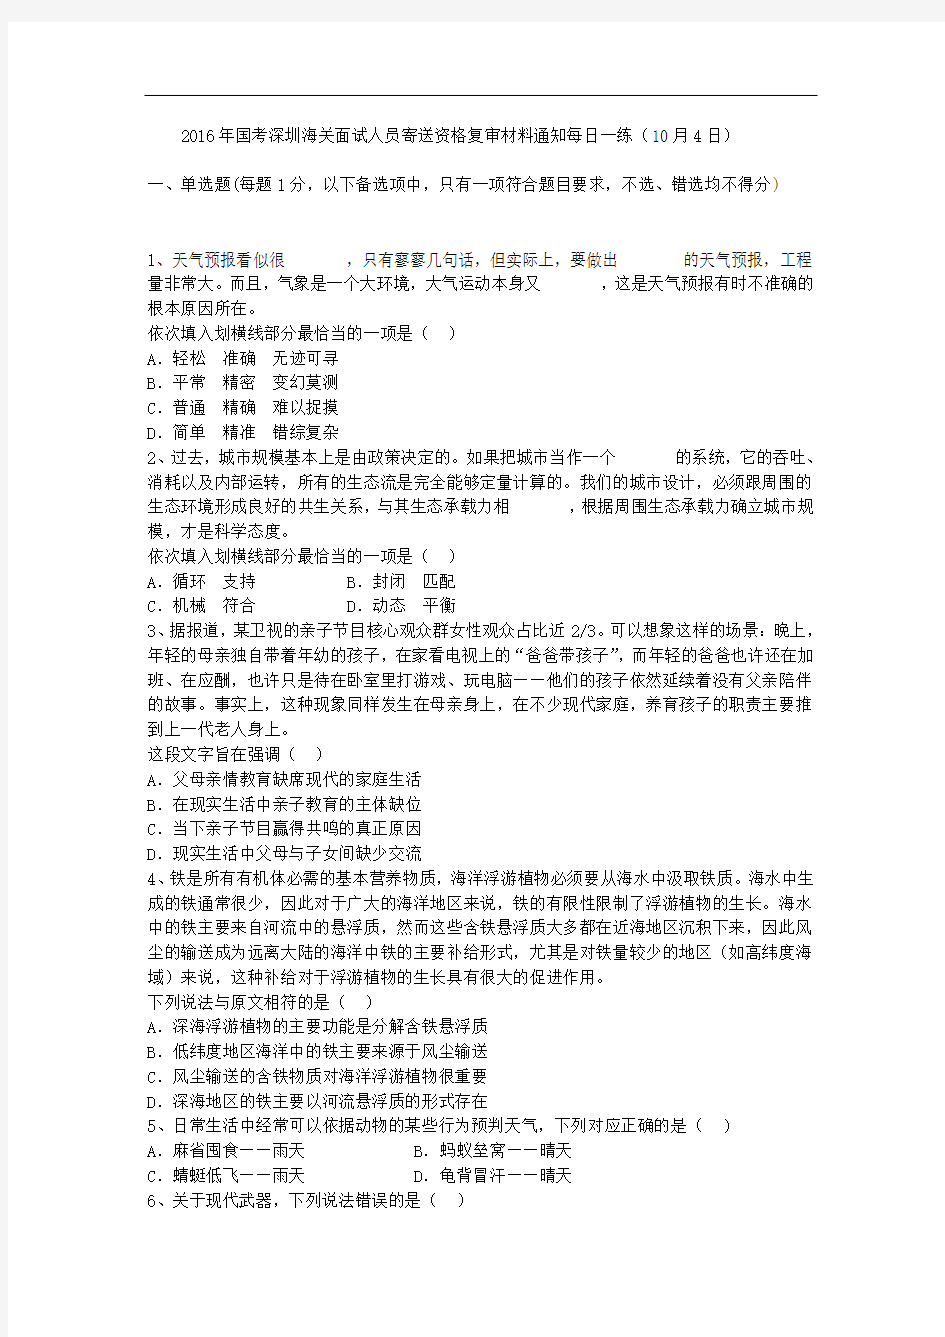 2016年国考深圳海关面试人员寄送资格复审材料通知每日一练(10月4日)